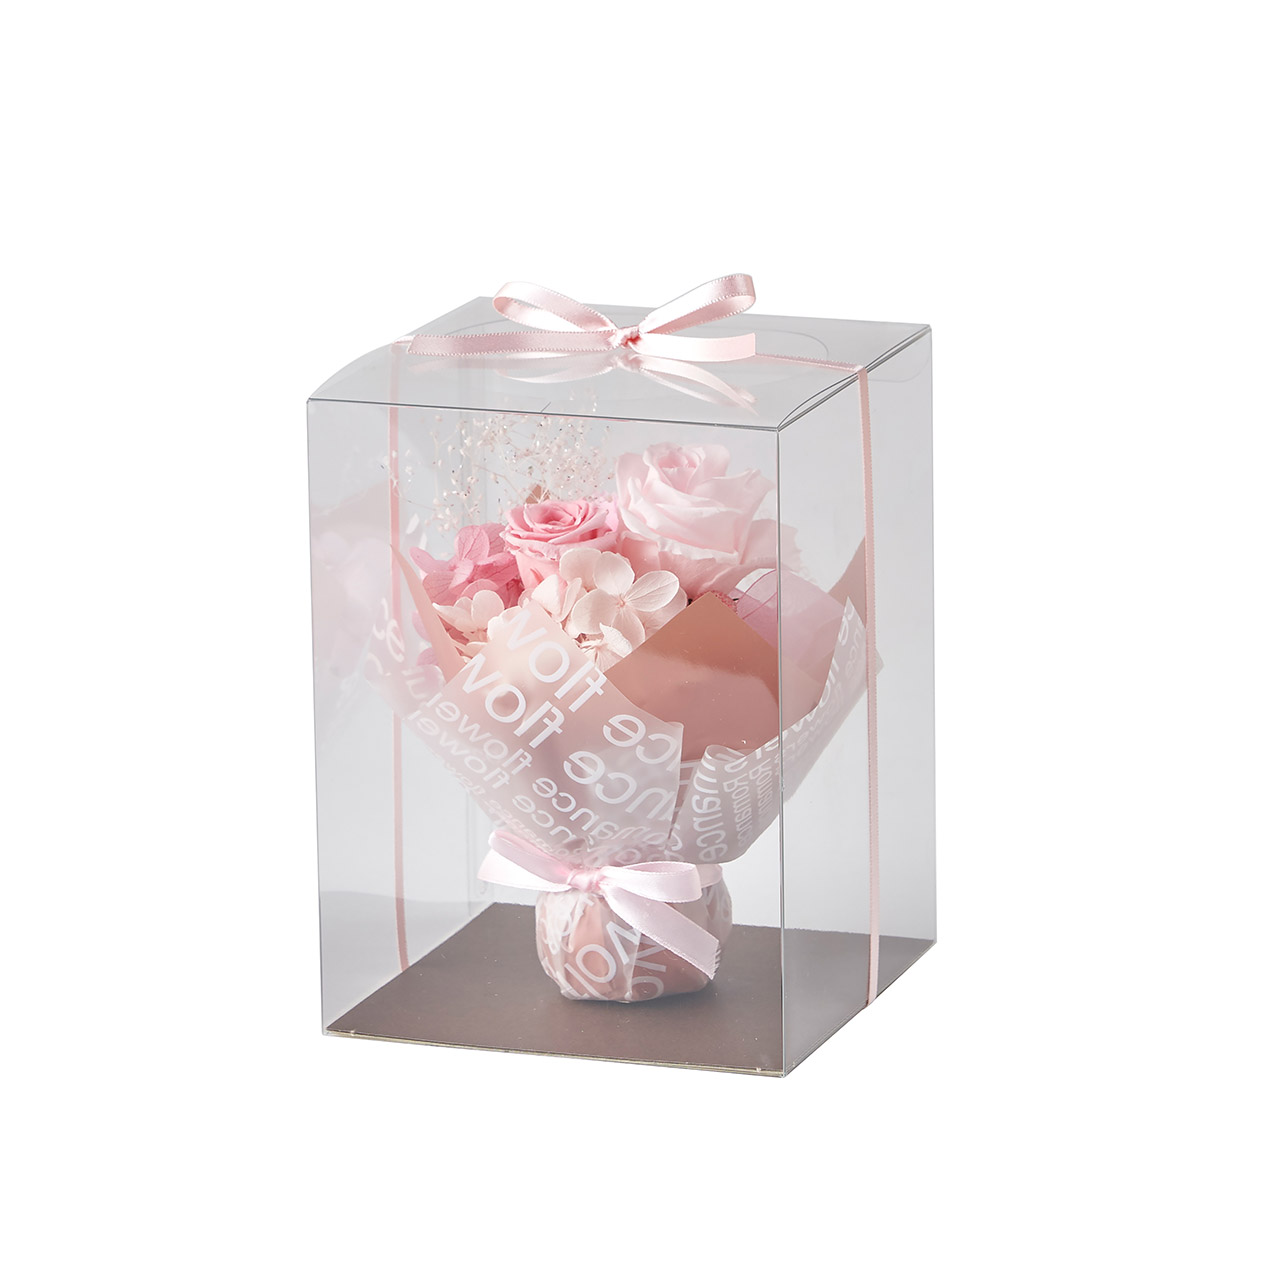 マイフラ 通販/東京堂オリジナル スタンドブーケ ピンク リボンラッピングアレンジメント 1コ ML00Z631-002 ギフトアレンジ(ピンク):  フラワーアレンジメント（キット・ギフト）/全国にMAGIQ、花器、花資材などをお届けします。